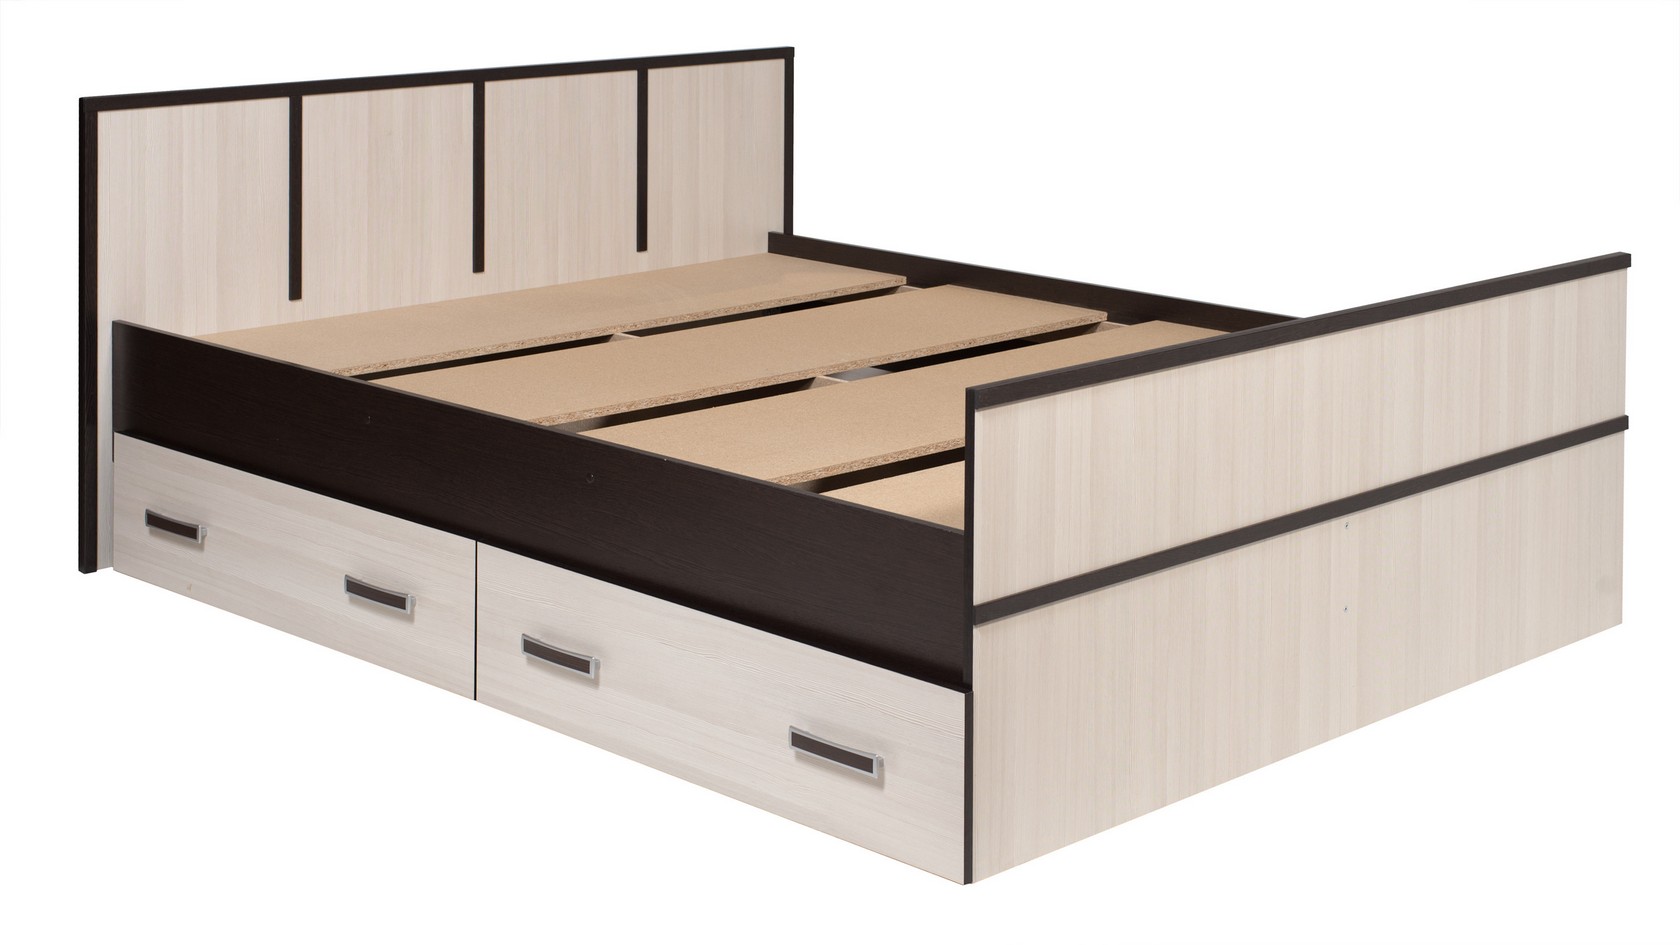 Двуспальная кровать Сакура Венге/Лоредо, 140х200 см